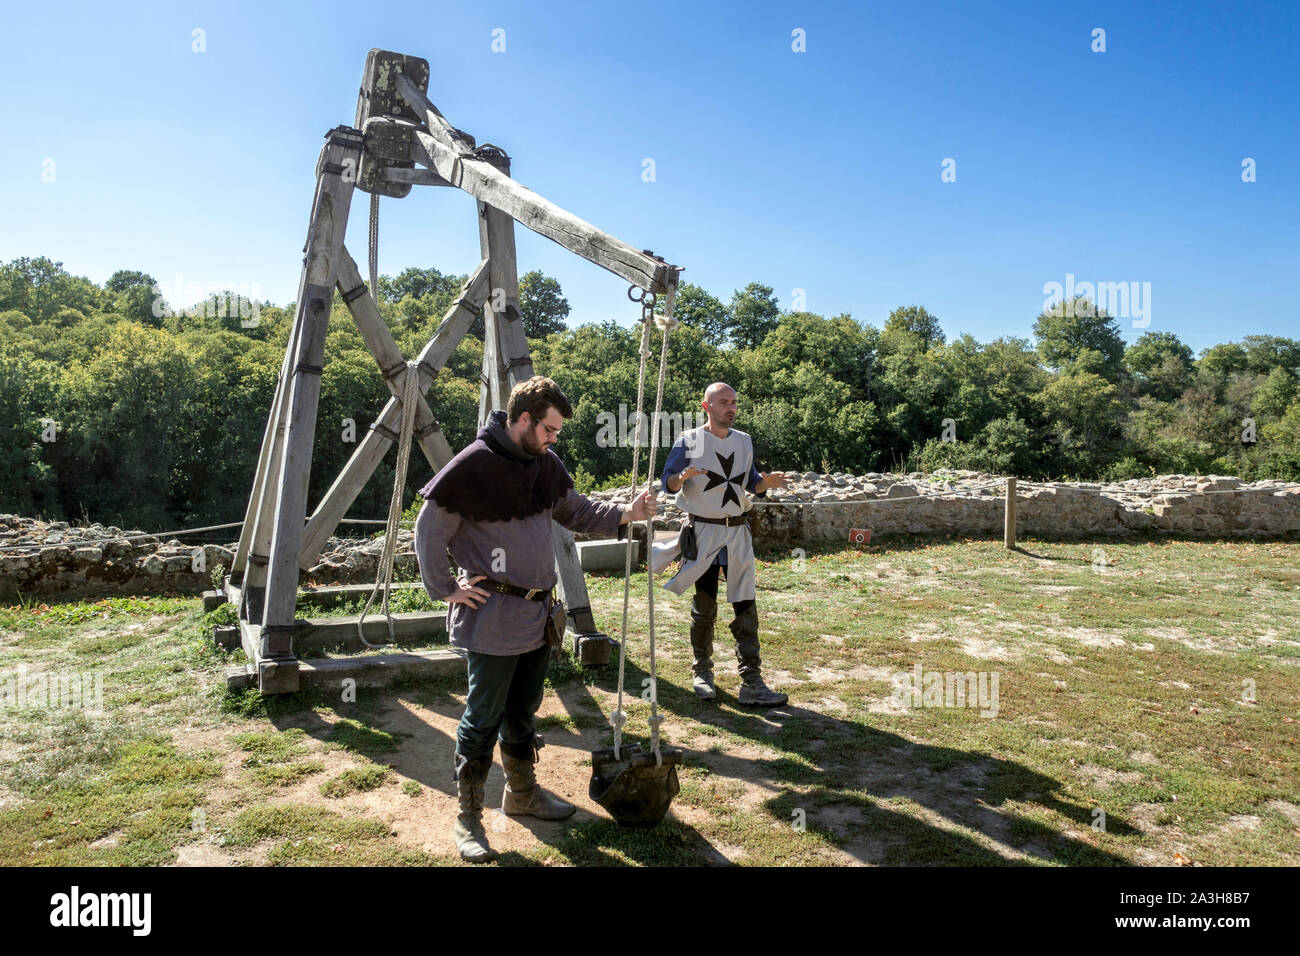 Reenactors dimostrando bricole / mangonel / trazione trebuchet, medievale manpowered imbracatura per il lancio di proiettili Foto Stock